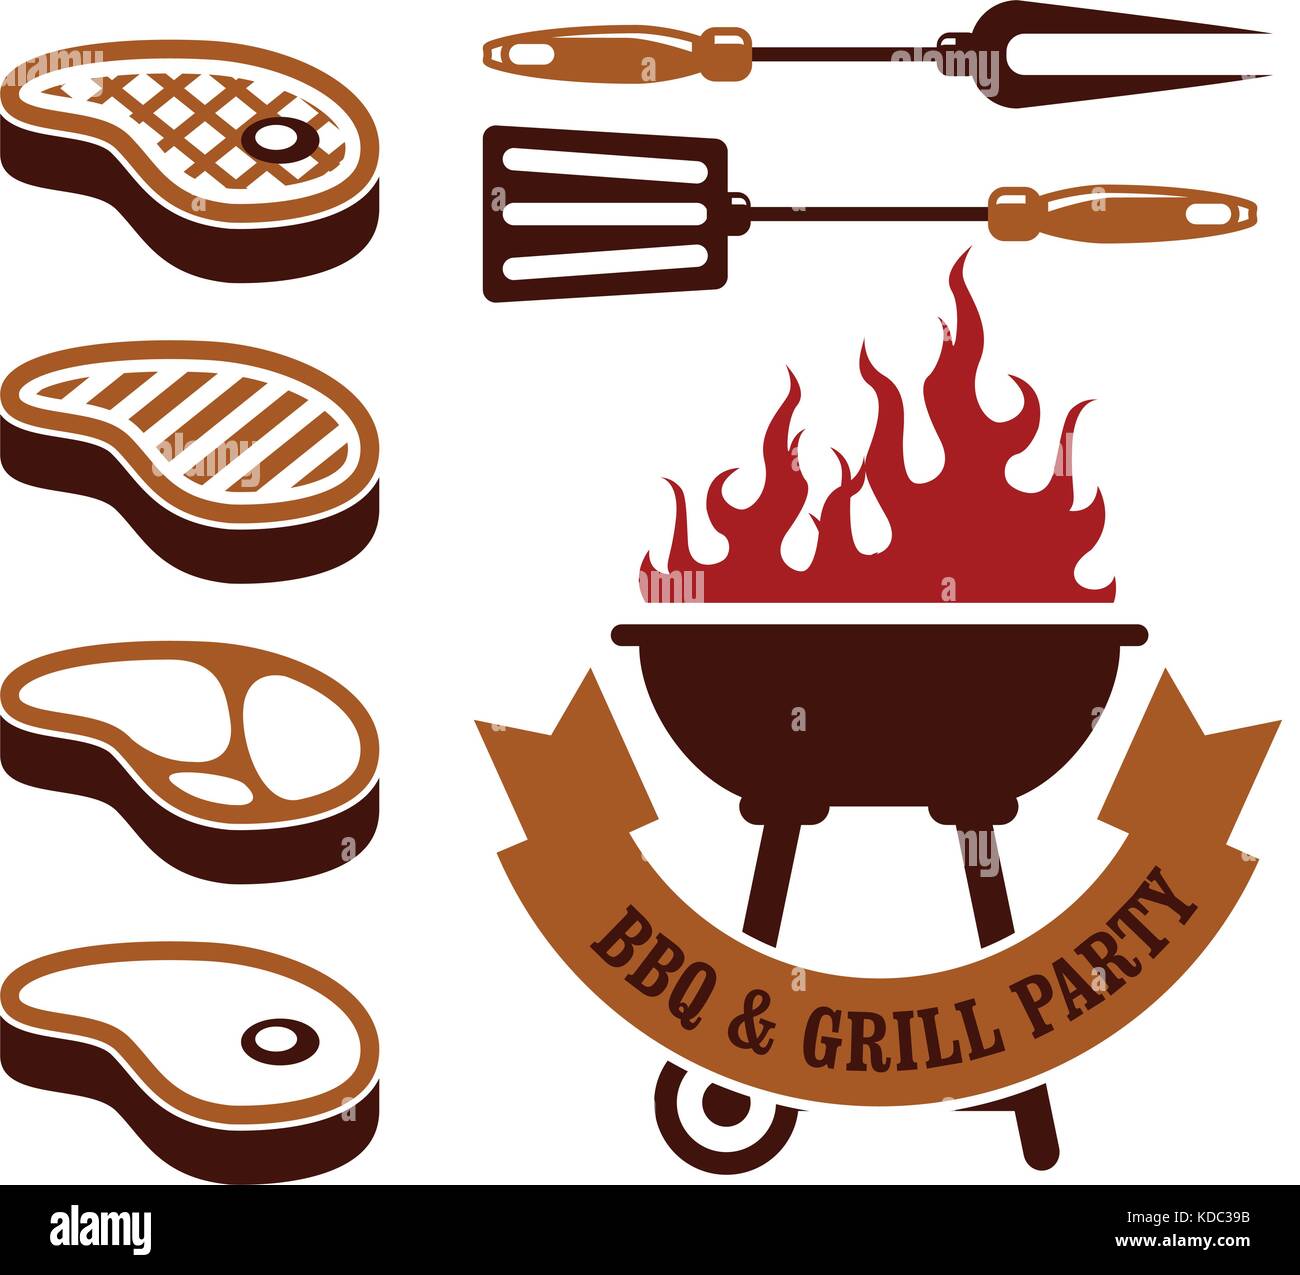 Partie de barbecue - steaks grill elements Illustration de Vecteur